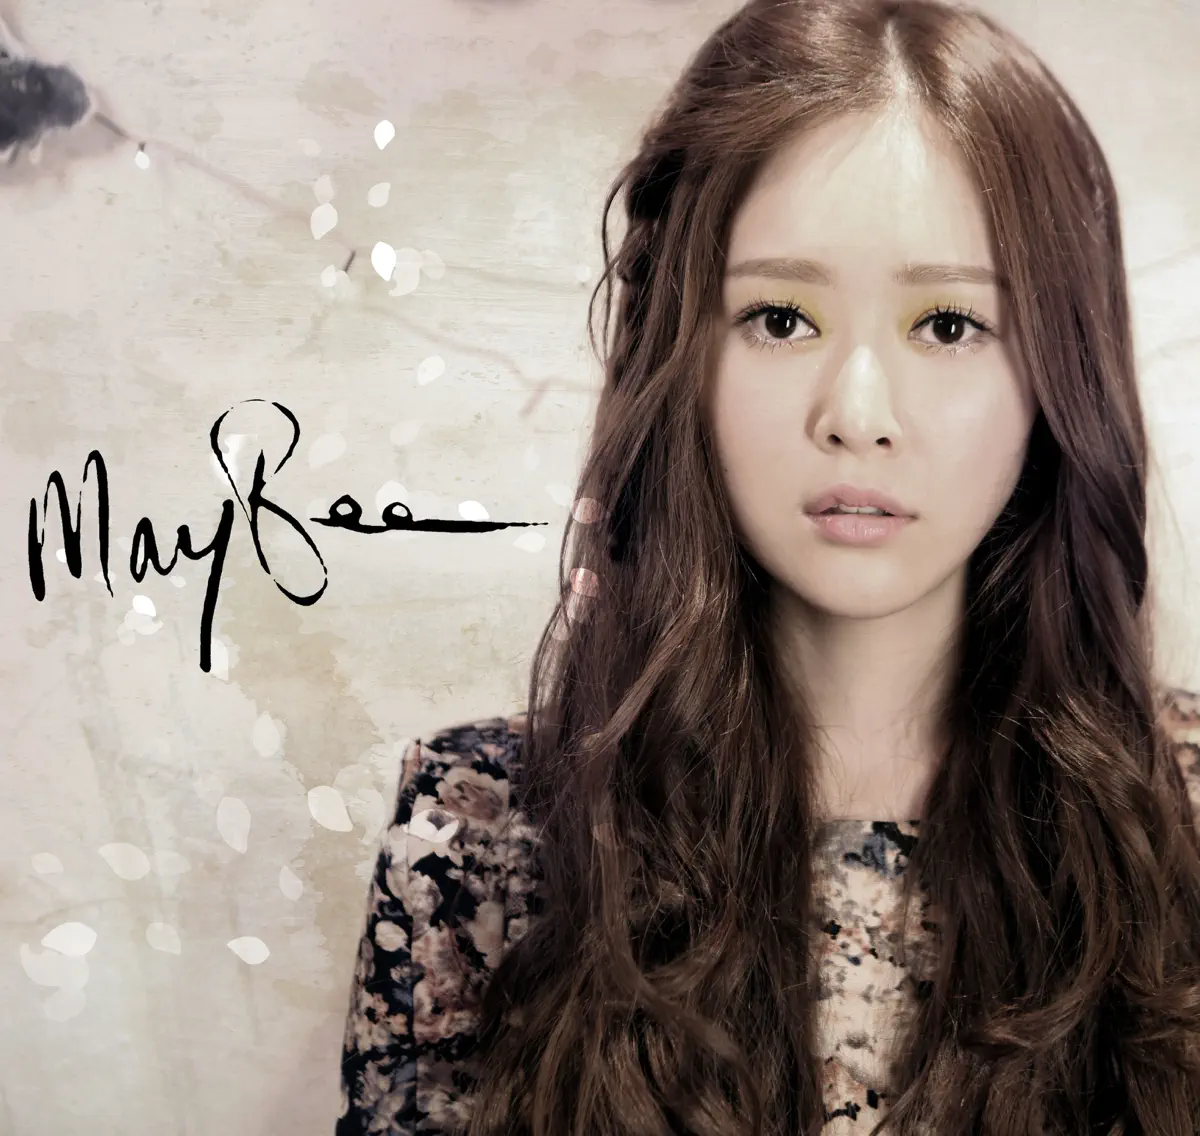 메이비 (Maybee) - 내일도 맑음 - Single (2013) [iTunes Plus AAC M4A]-新房子